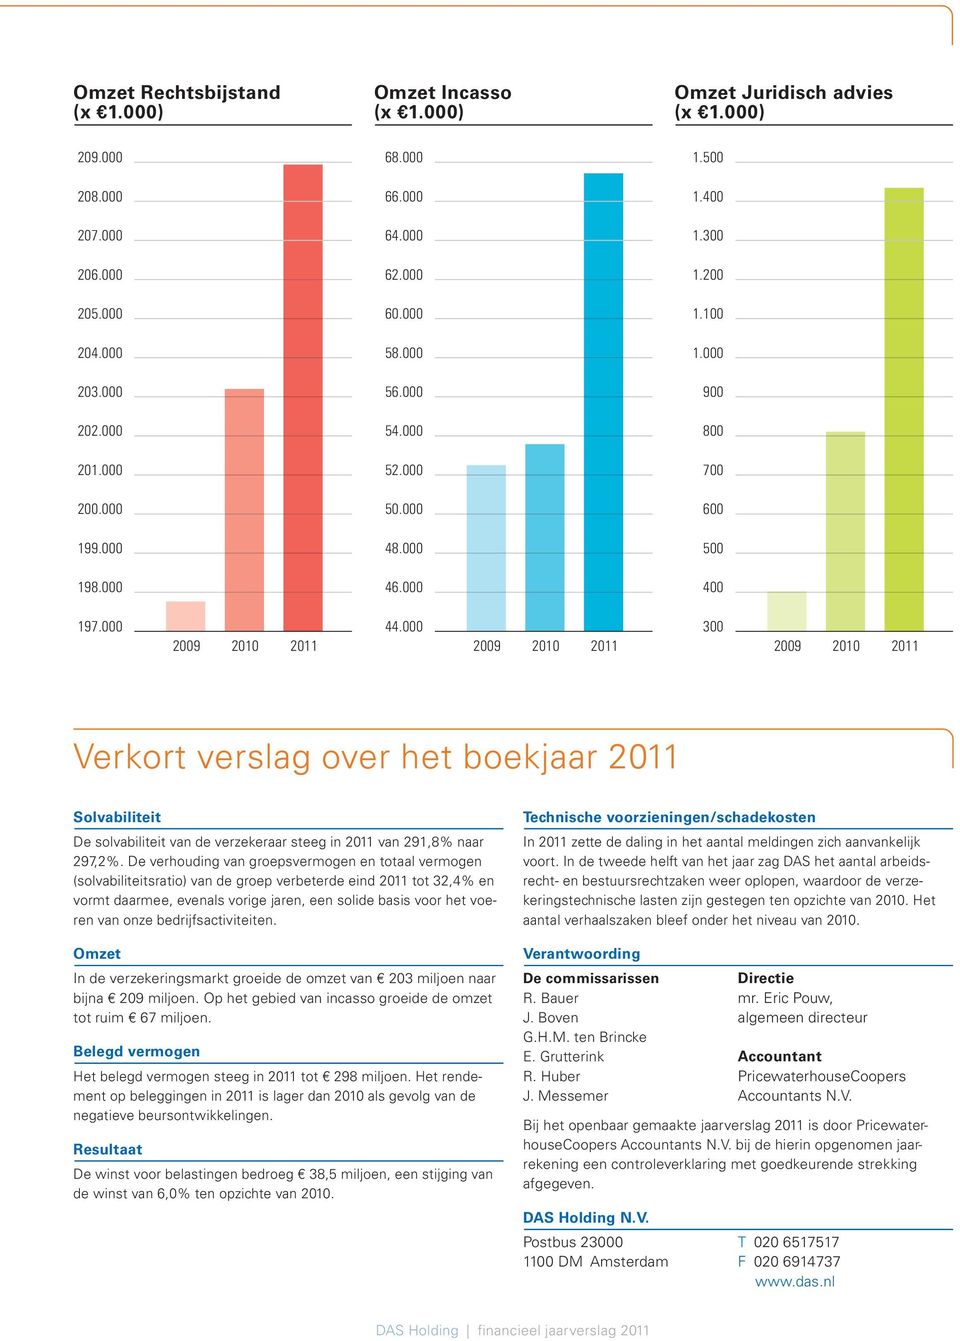 000 2009 2010 2011 300 2009 2010 2011 Verkort verslag over het boekjaar 2011 Solvabiliteit De solvabiliteit van de verzekeraar steeg in 2011 van 291,8% naar 297,2%.